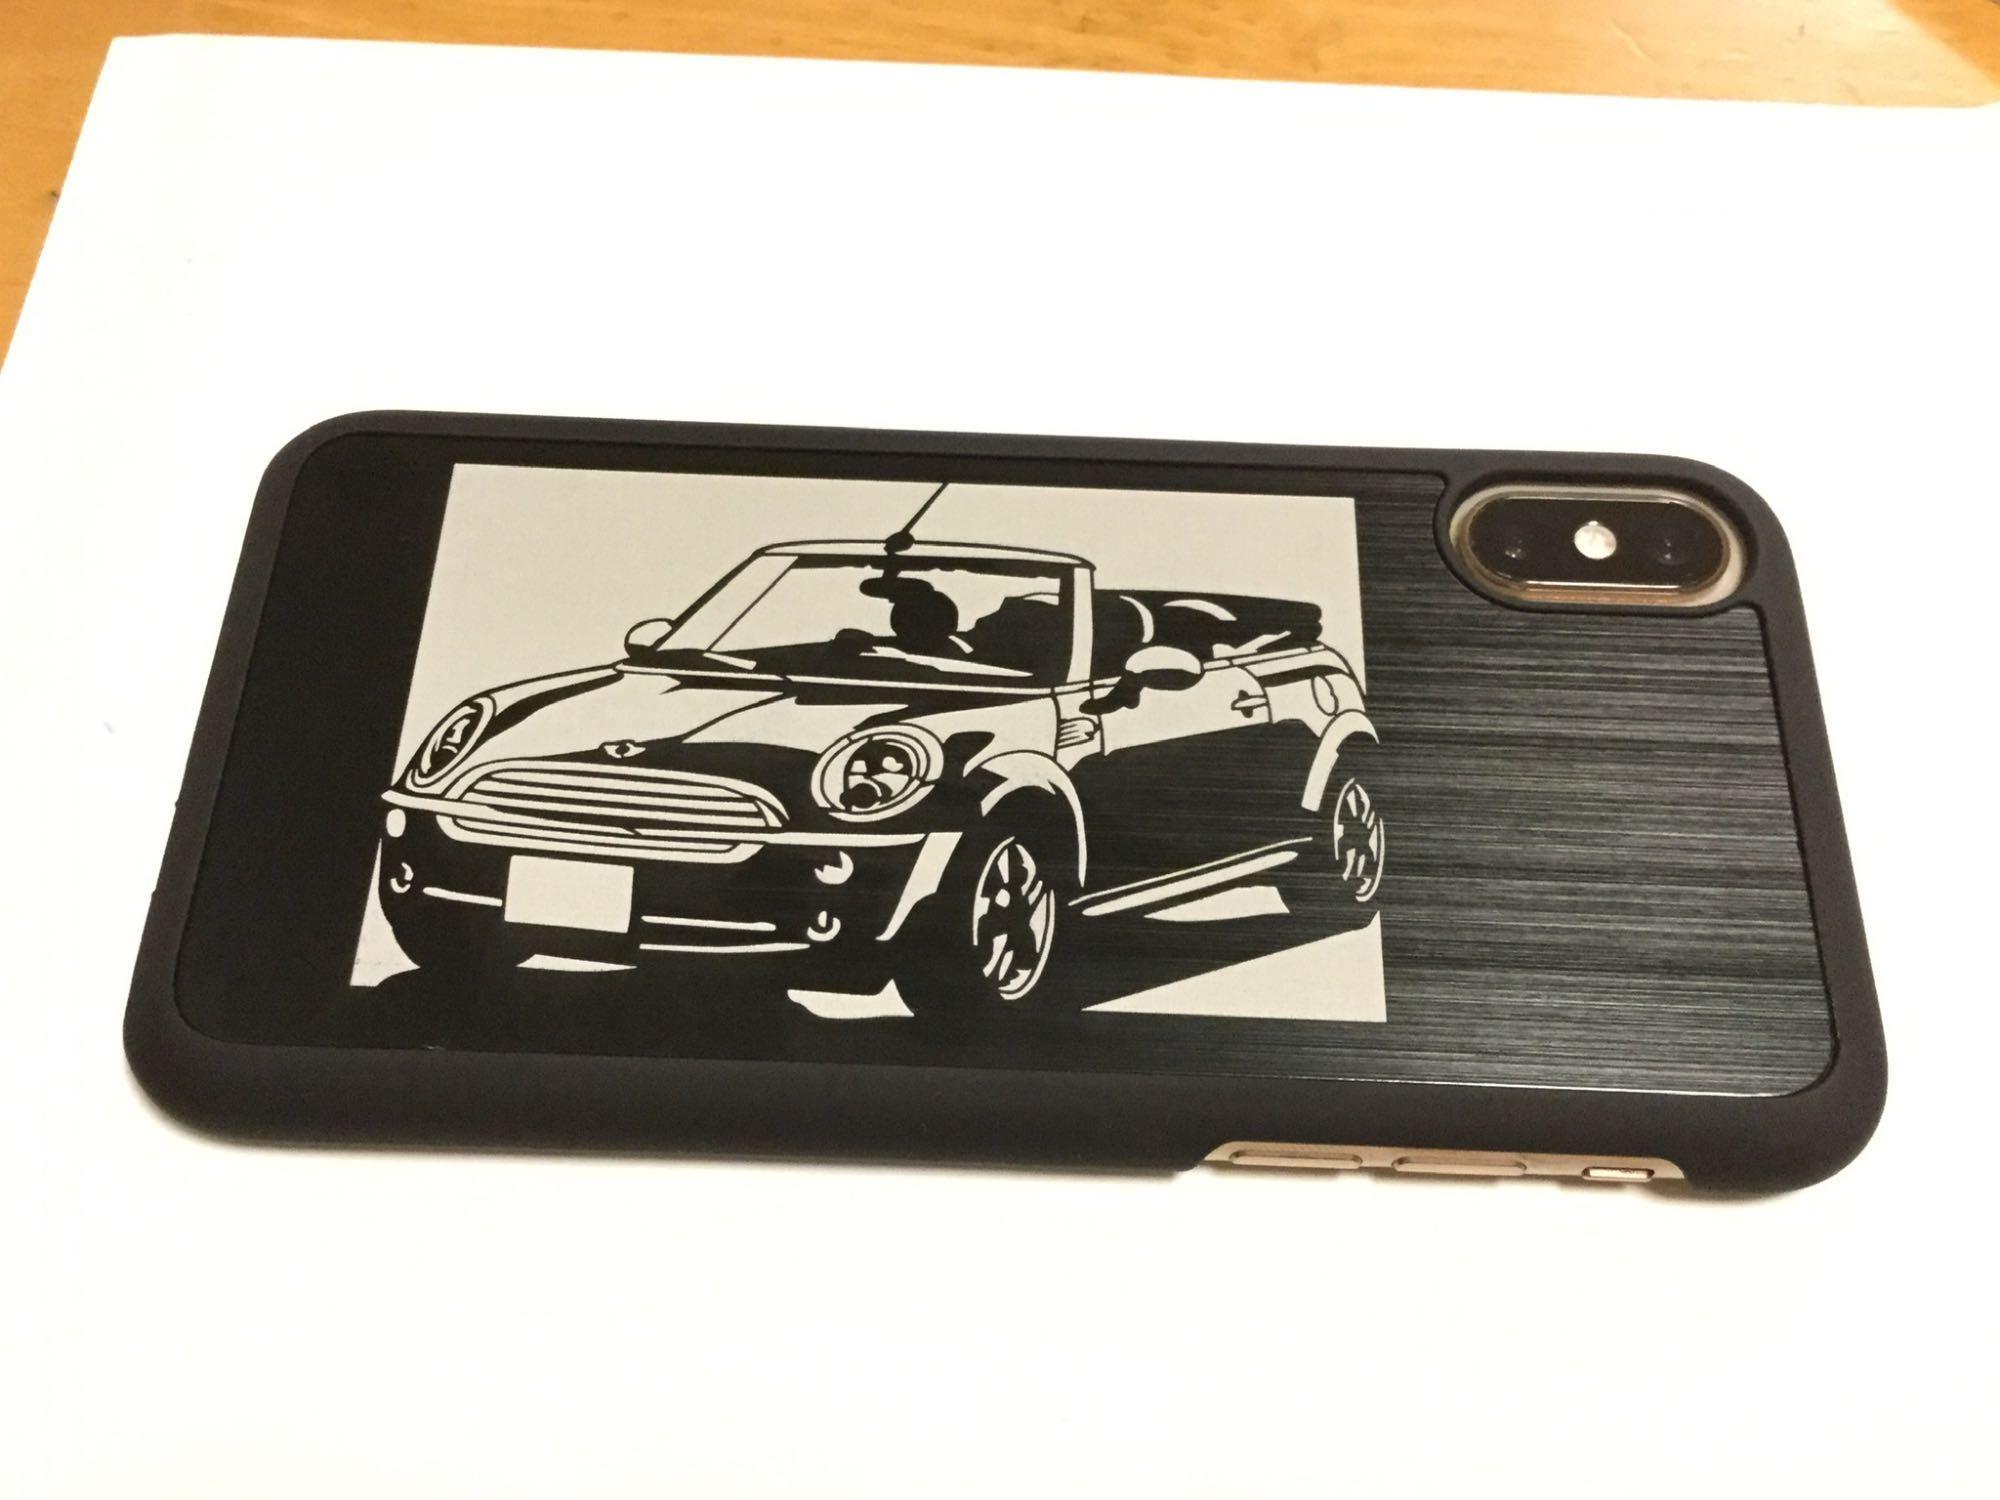 iPhoneXケース「BMW mini 」切り絵デザイン ブラックアルマイト[メーカ 